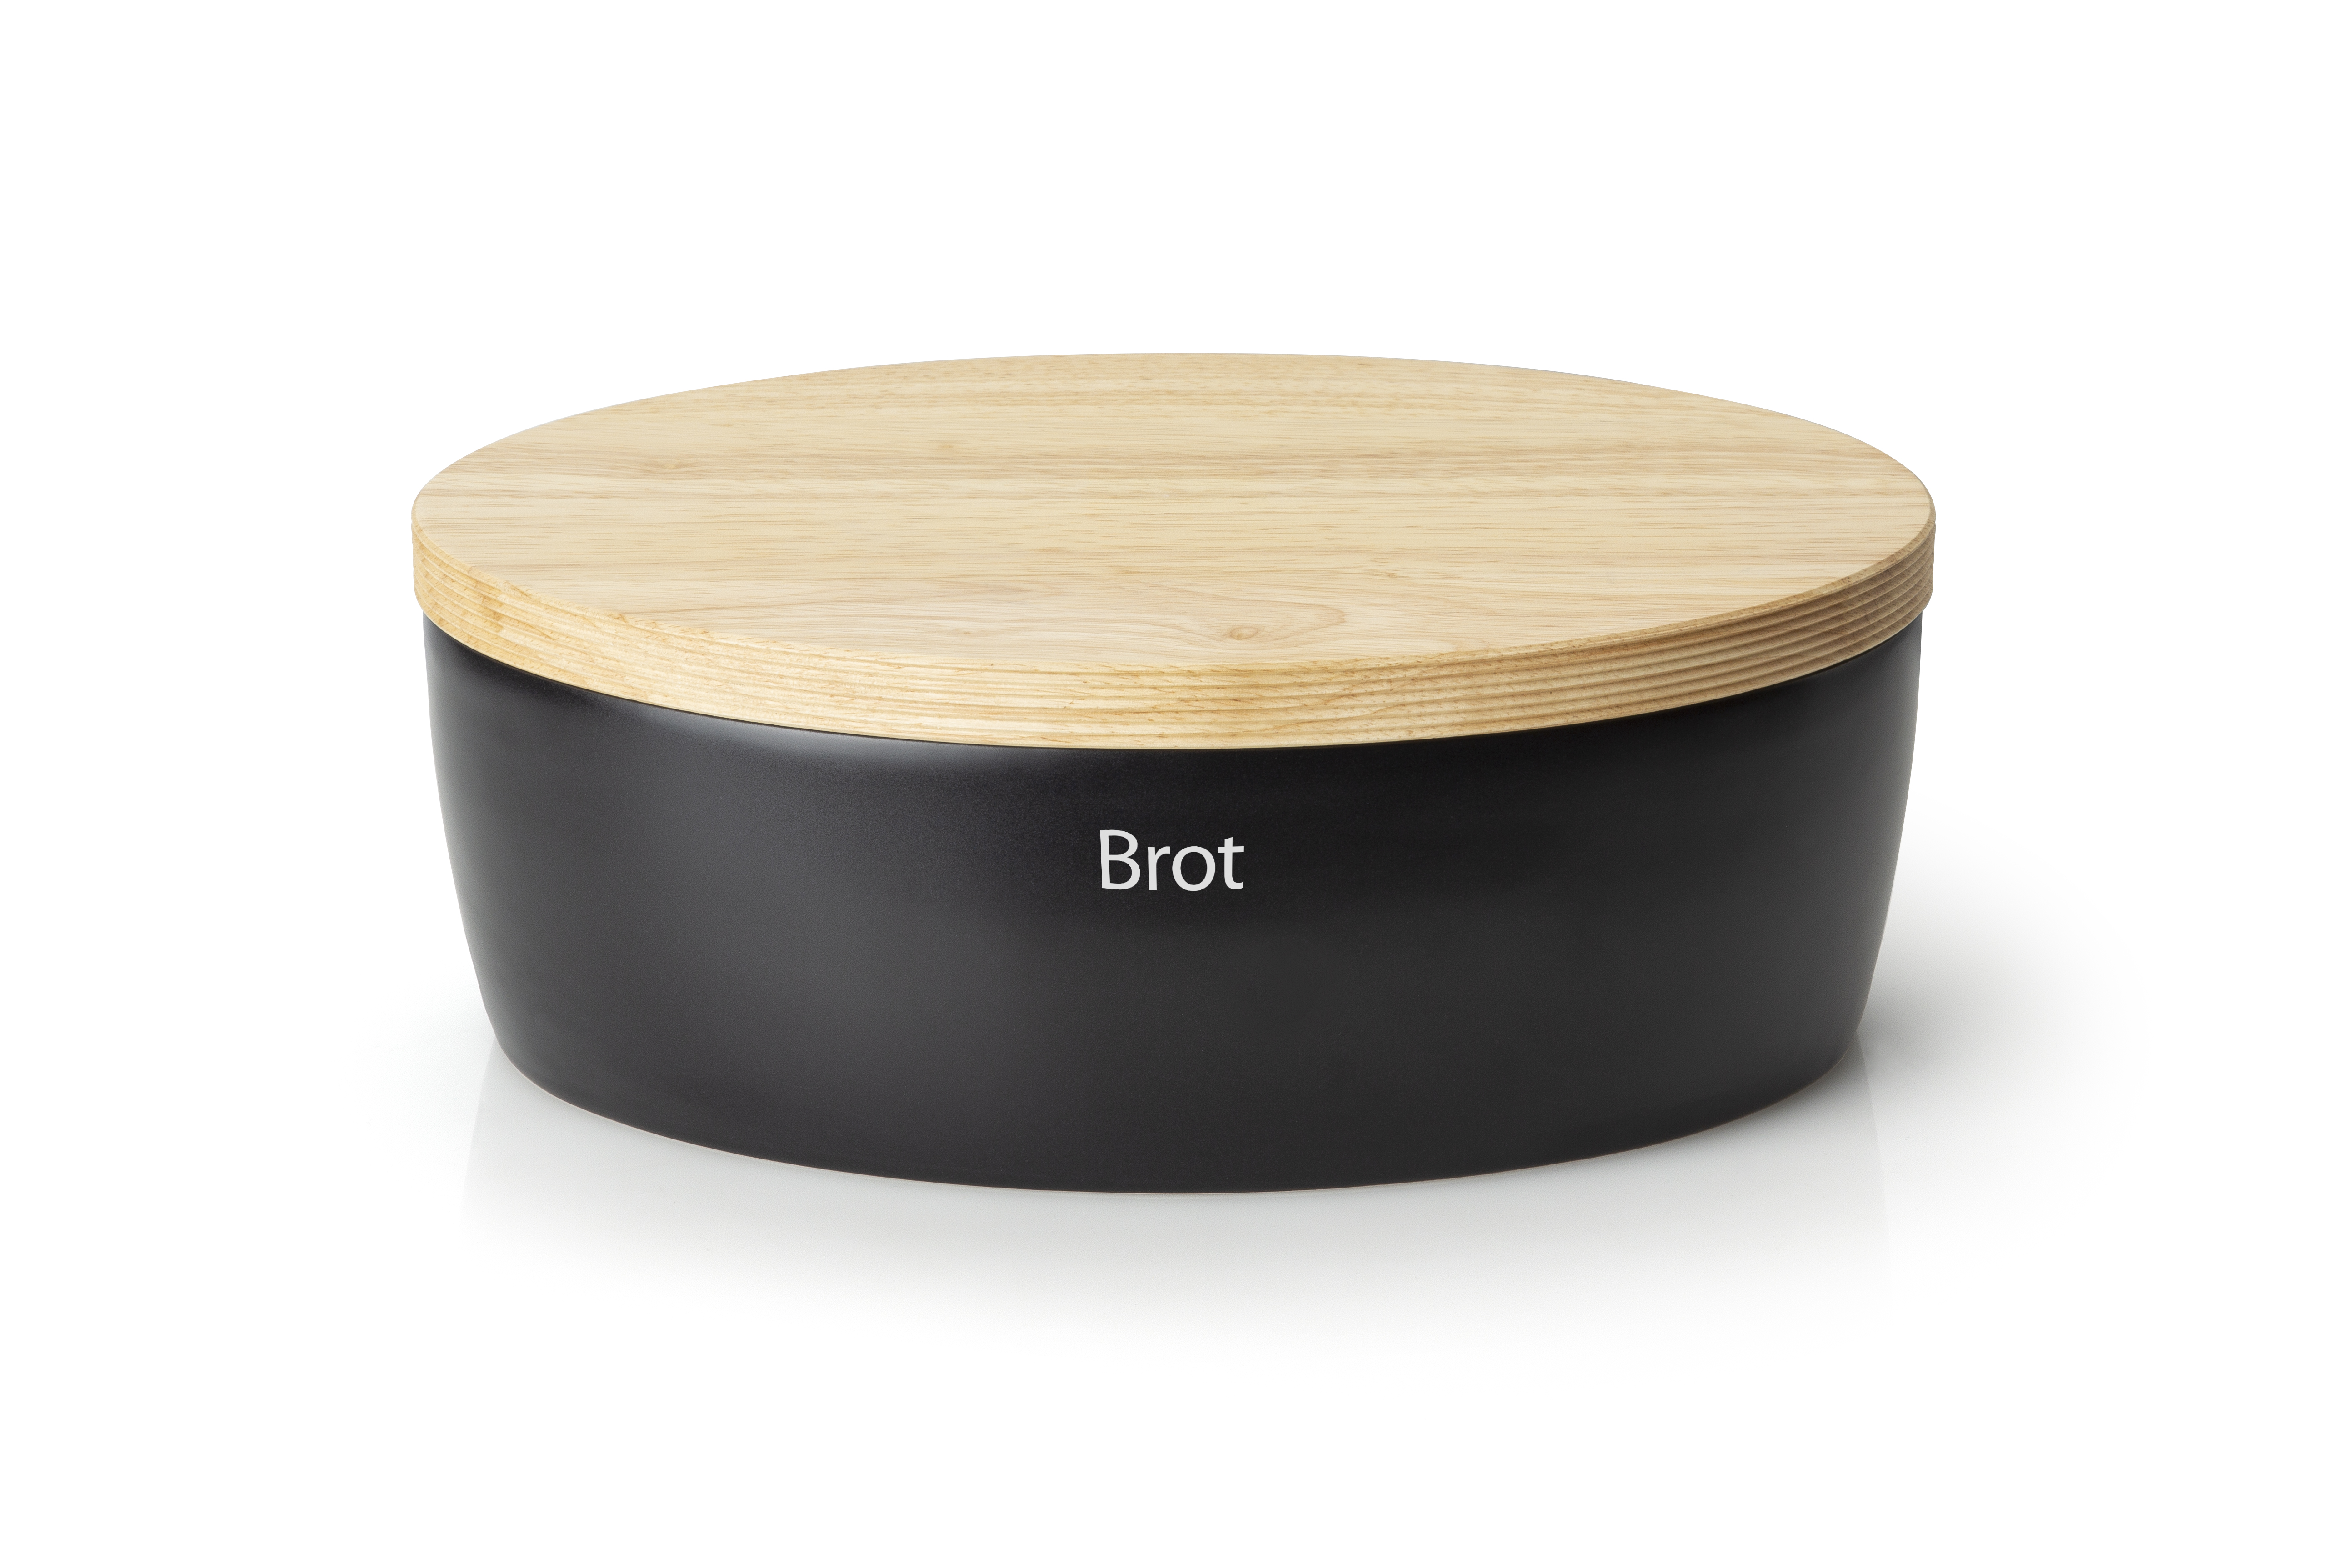 Brottopf oval mit Holzdeckel, matt schwarz 36 x 23 x 13,5 cm,Deckel als Scheidbrett nutzbar Perfekte Form zum Aufbewahren von Brot